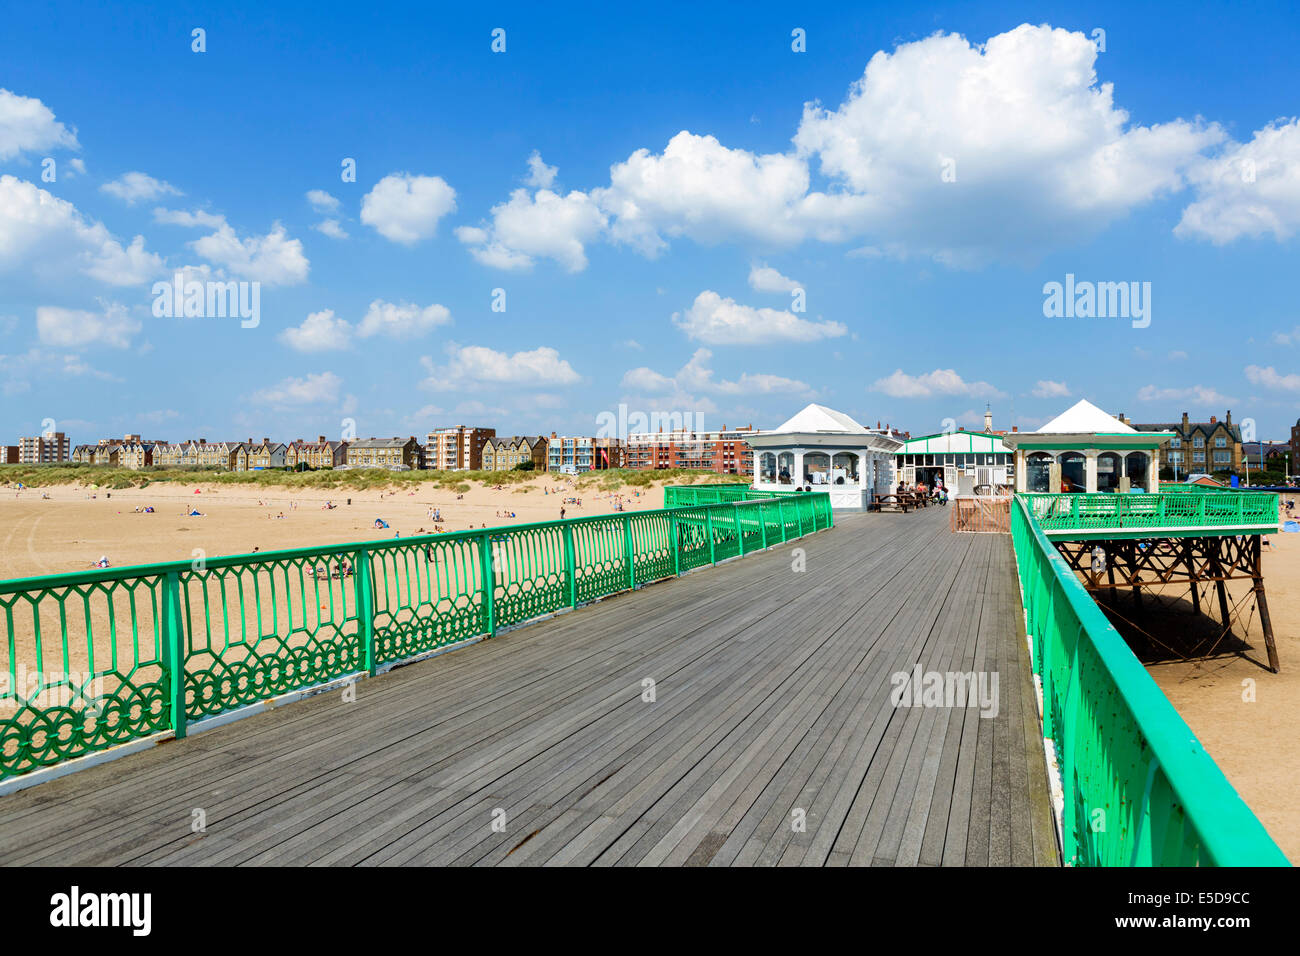 Historique Pier et de la plage à St Anne's, Lytham St Annes, Fylde Coast, Lancashire, UK Banque D'Images